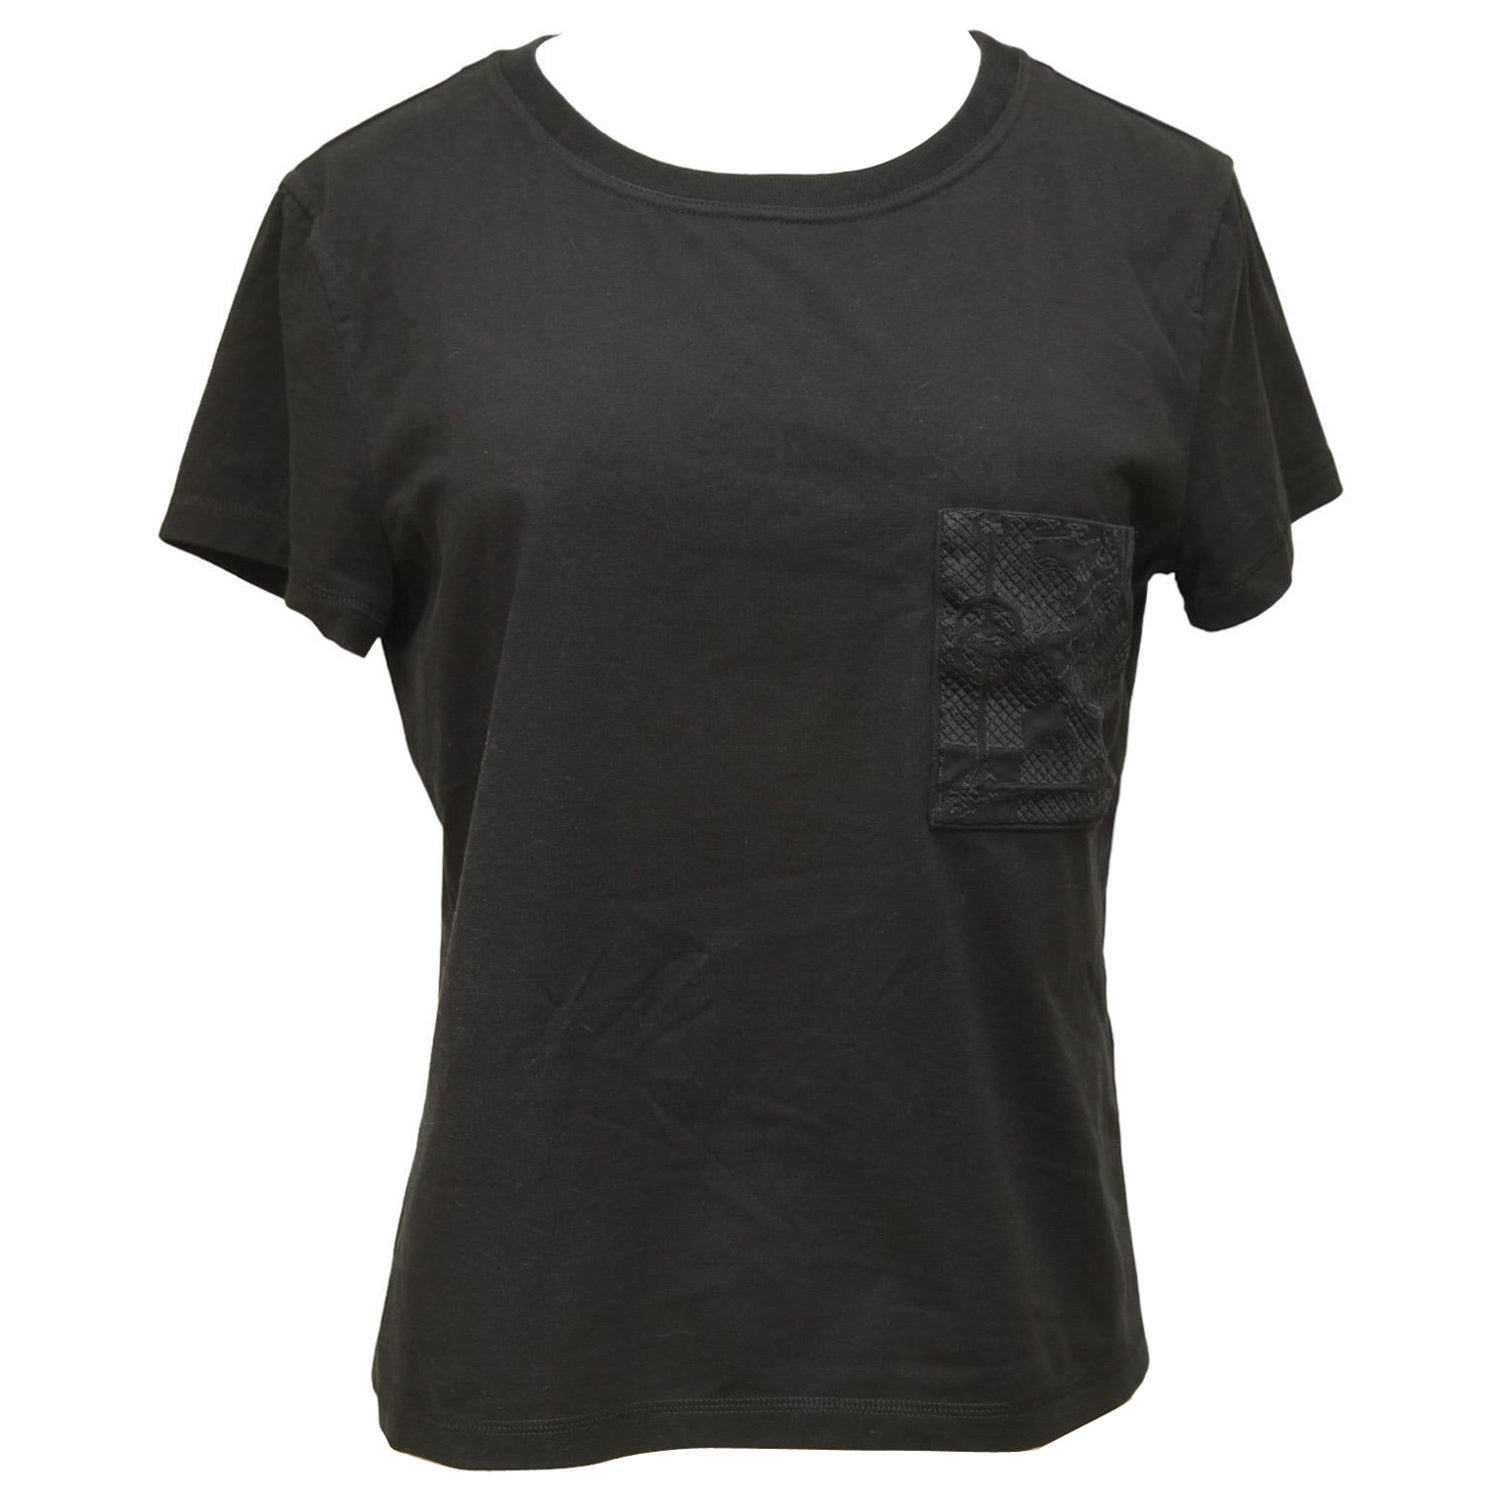 LOUIS VUITTON Classic T-shirt Black. Size M0